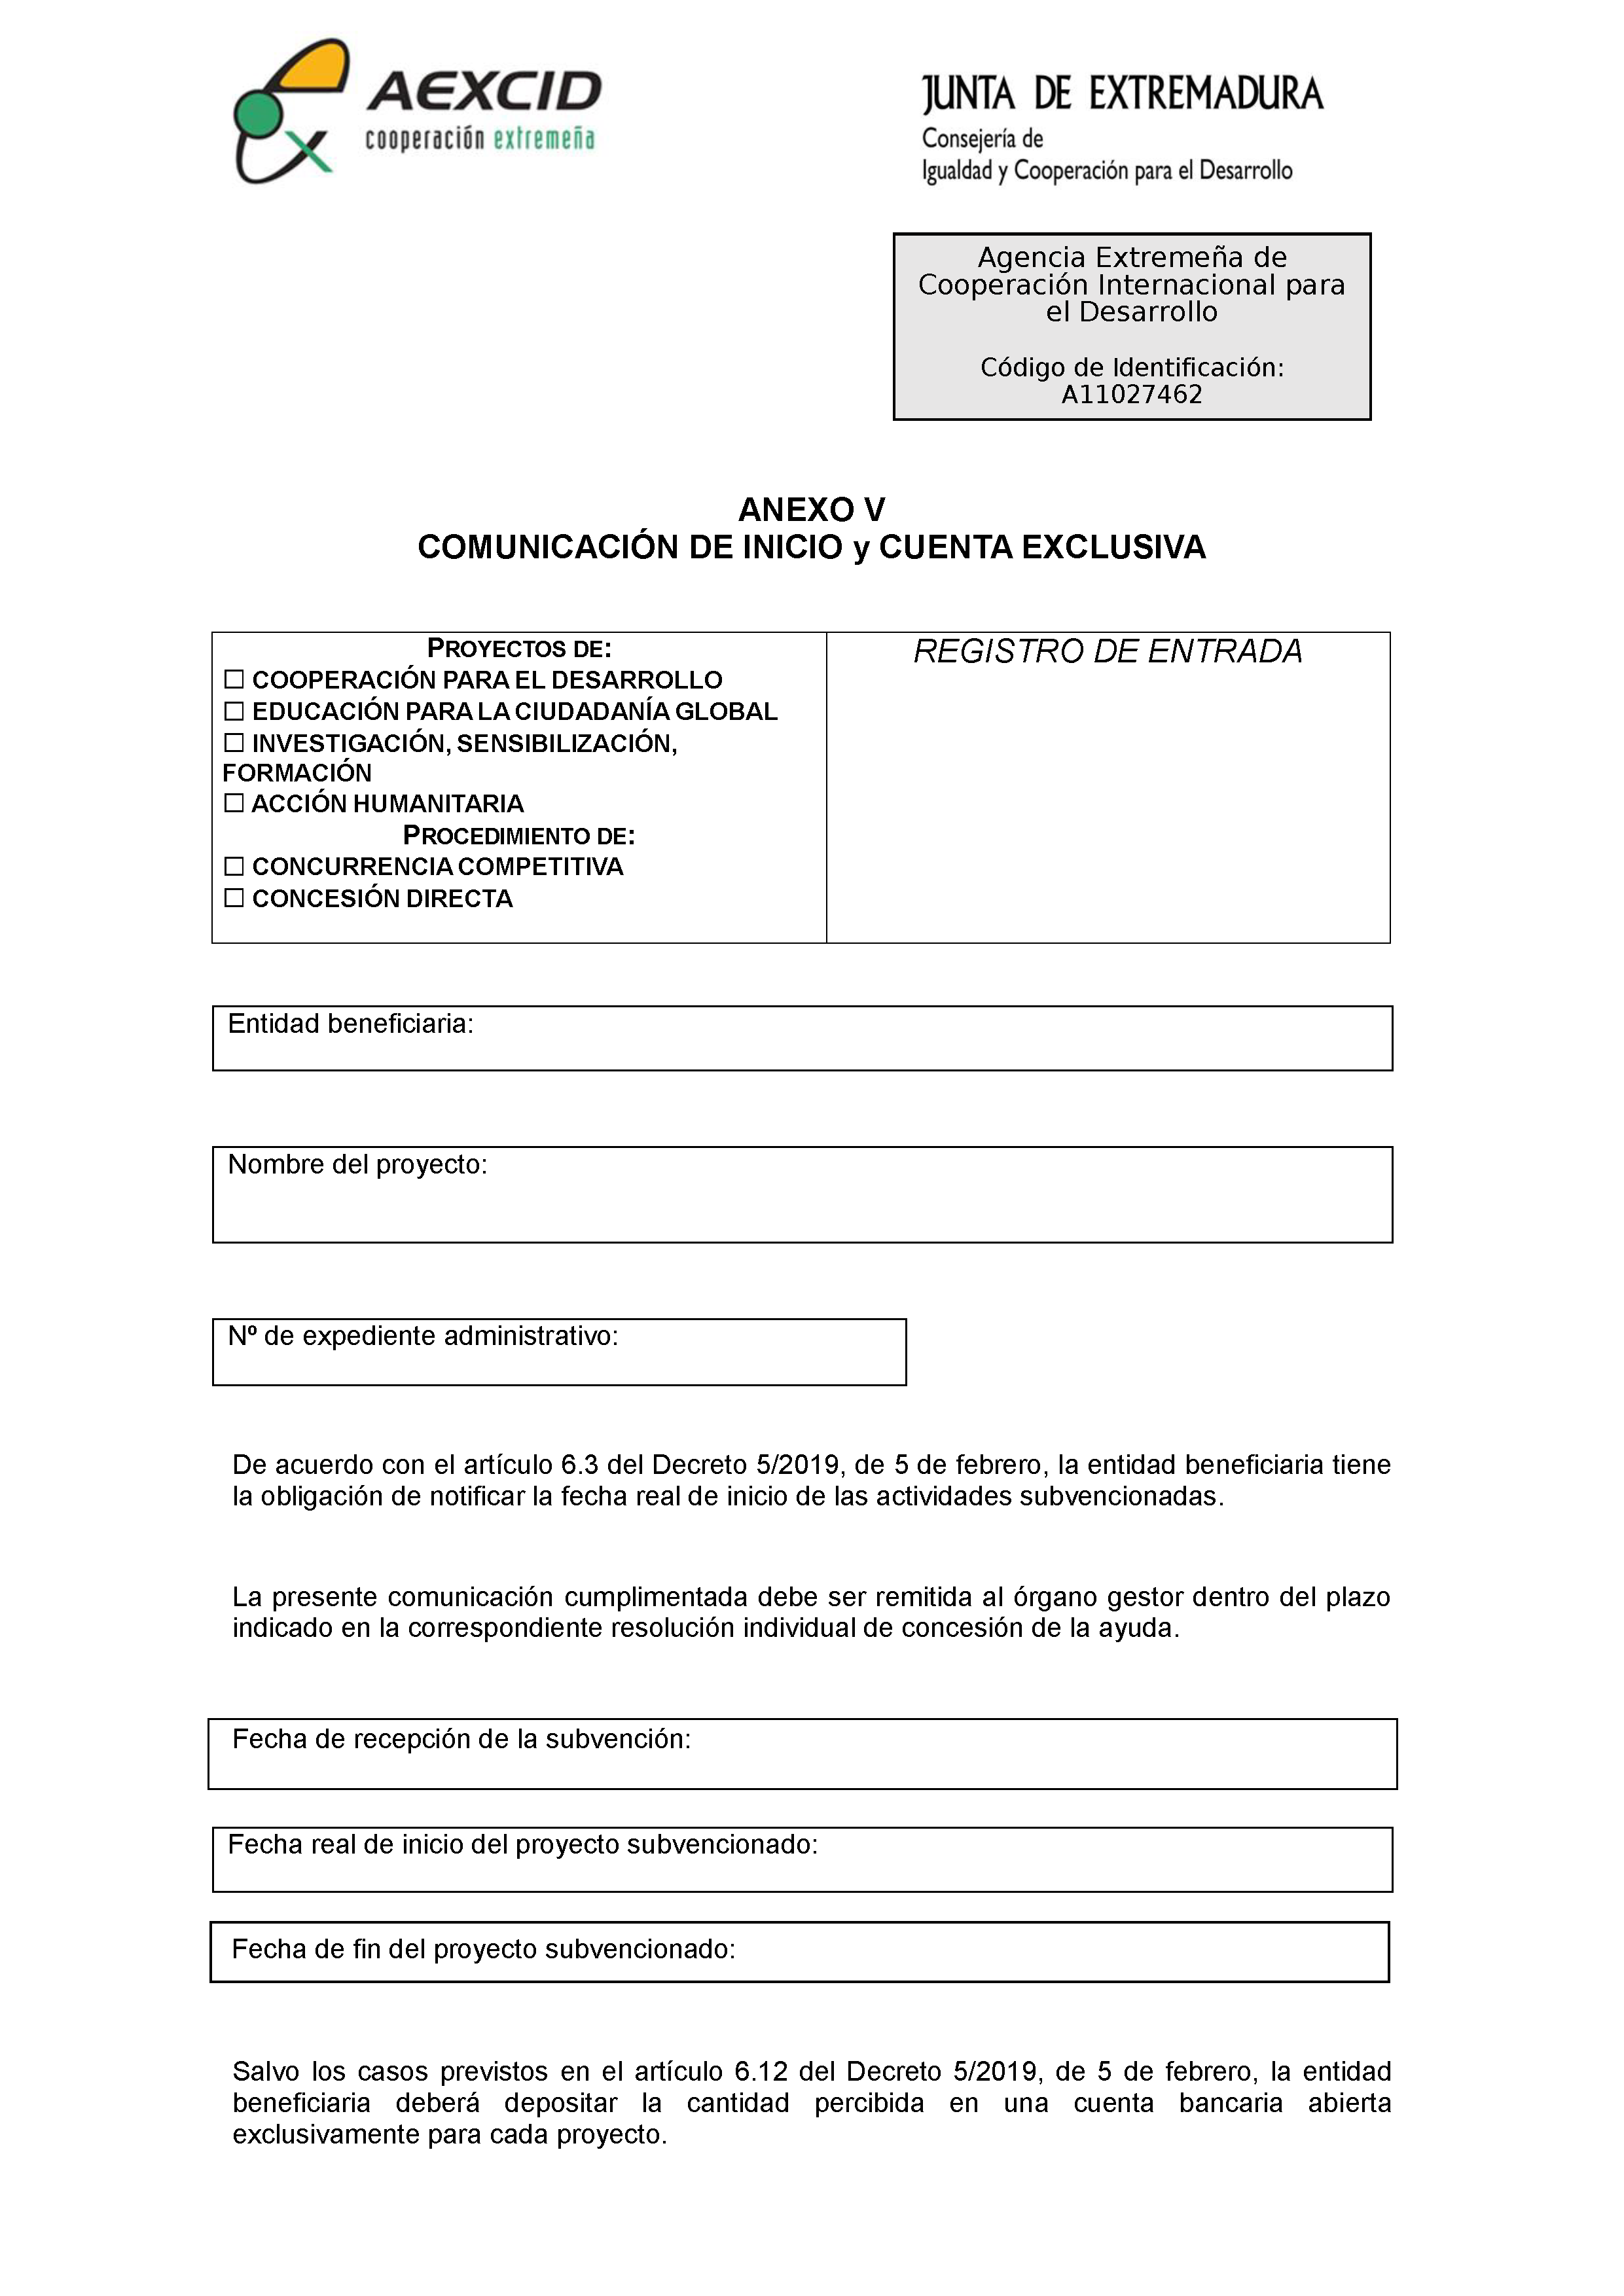 ANEXO V COMUNICACION DE INICIO Y CUENTA EXCLUSIVA Pag 1